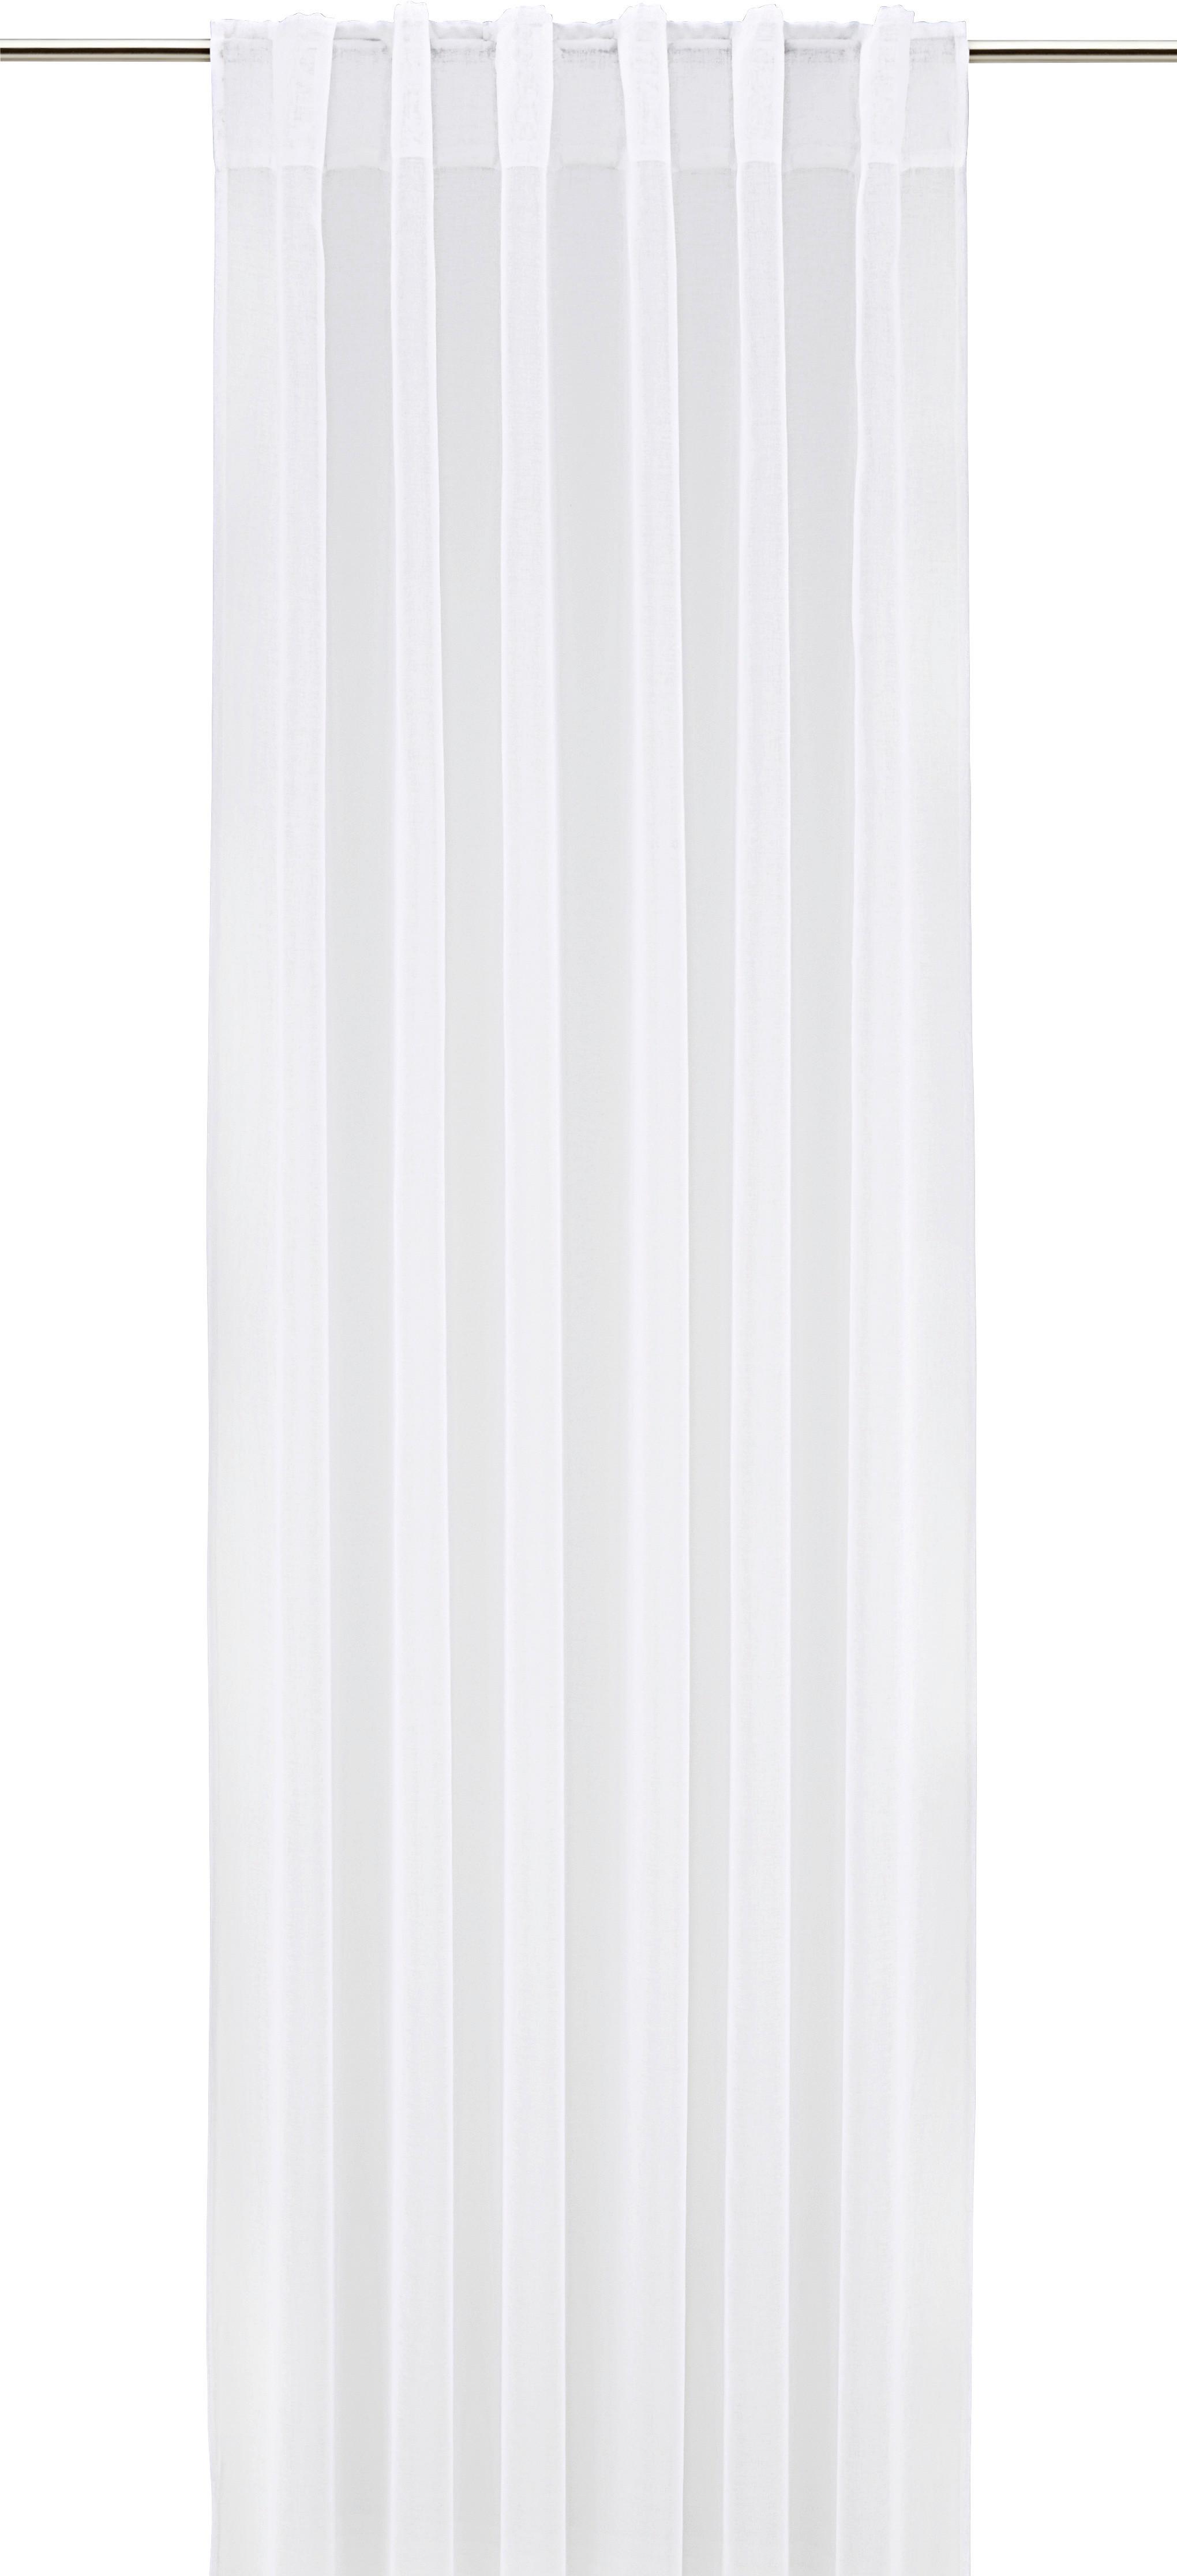 Záves Tosca, 2x140/245cm, Biela - biela, textil (140/245cm) - Modern Living